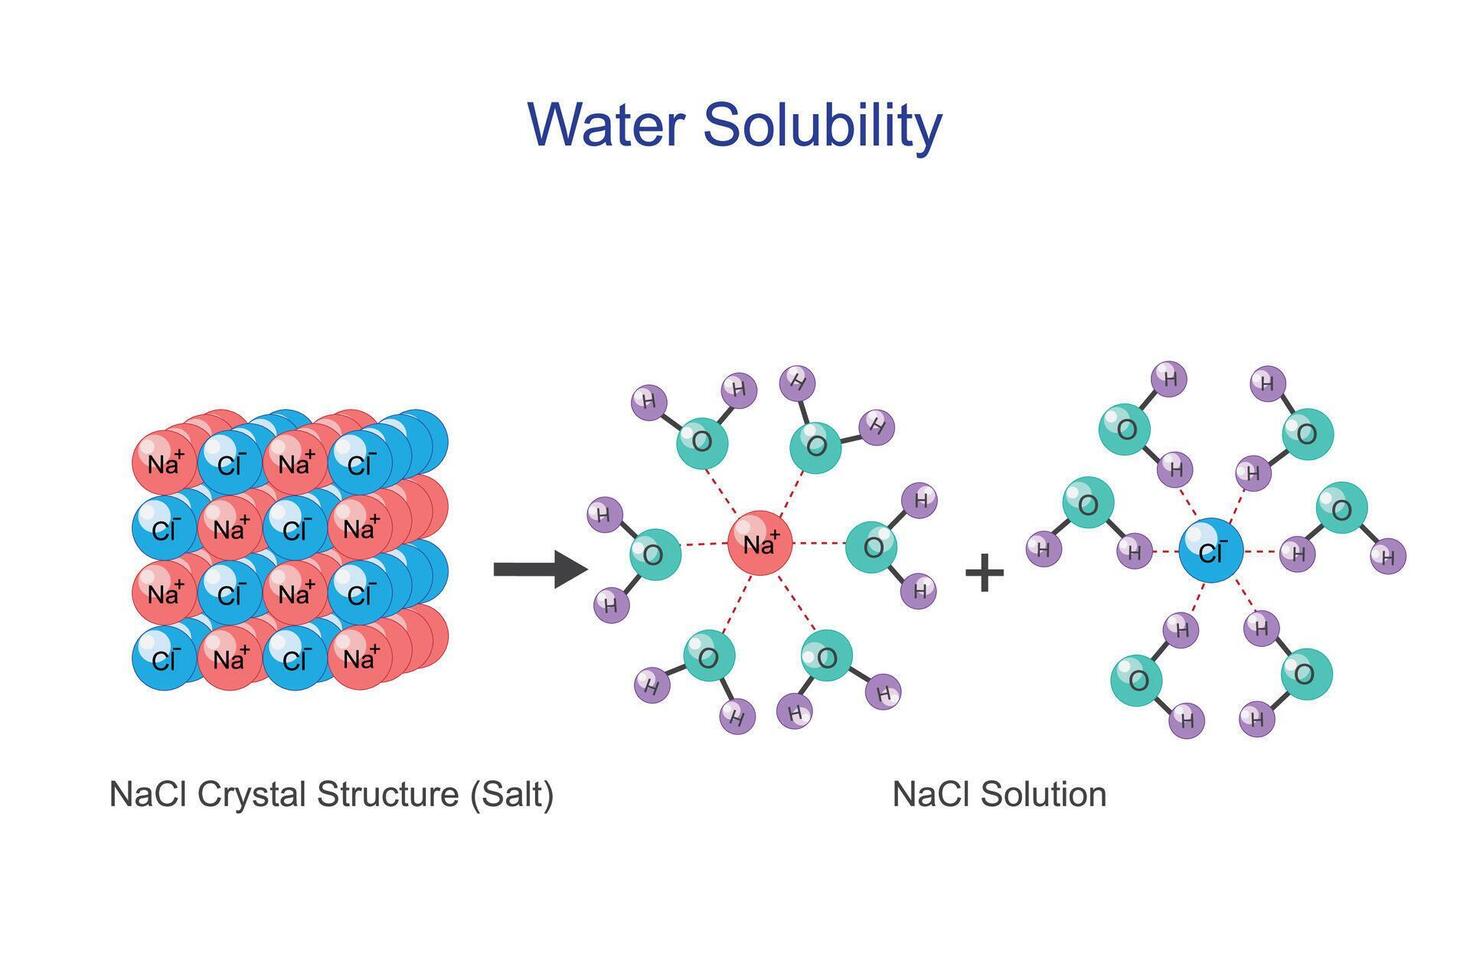 acqua solubilità di sodio cloruro nacl o sale. acquoso soluzione di idratato cationi e idratato anioni. chimica concetto. vettore